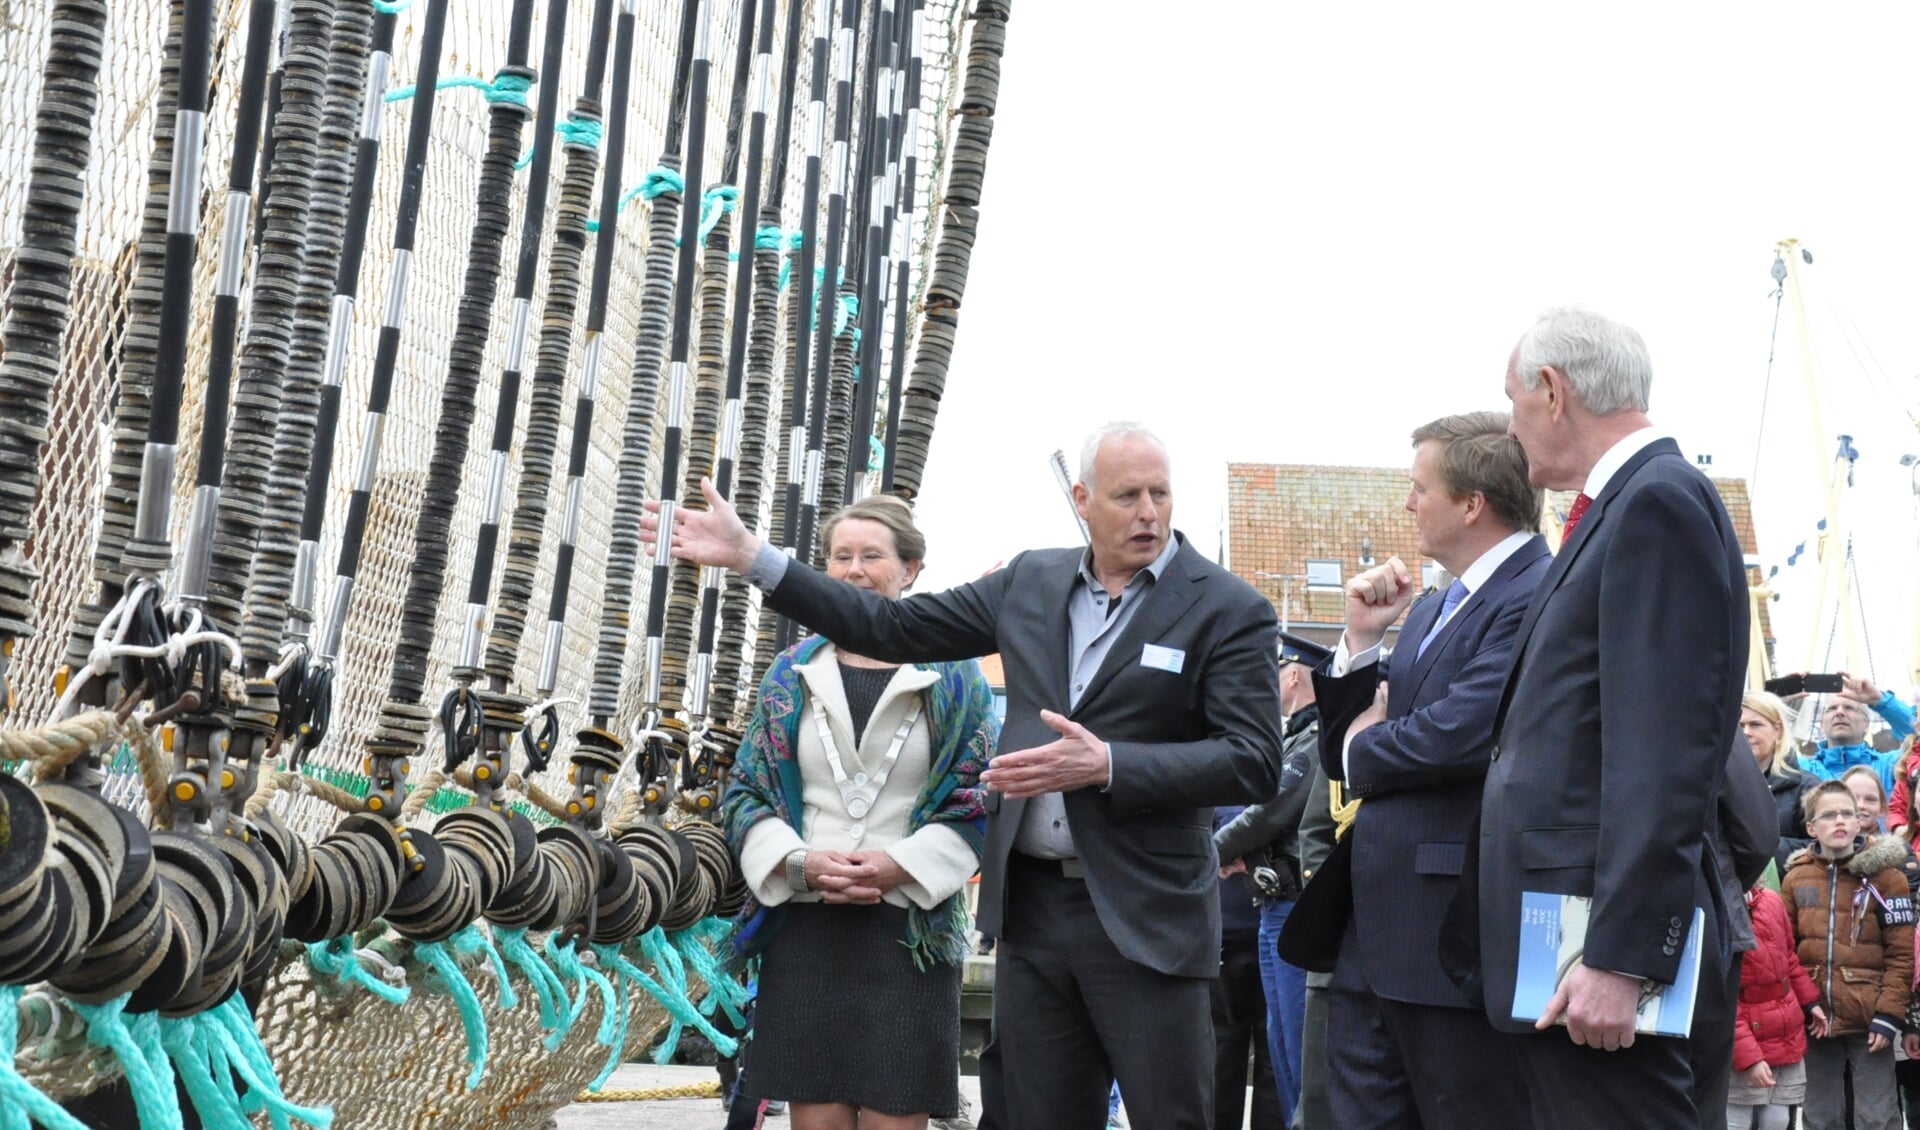 In 2014 kreeg koning Willem-Alexander nog uitleg over de pulskor en voor voordelen ervan. 